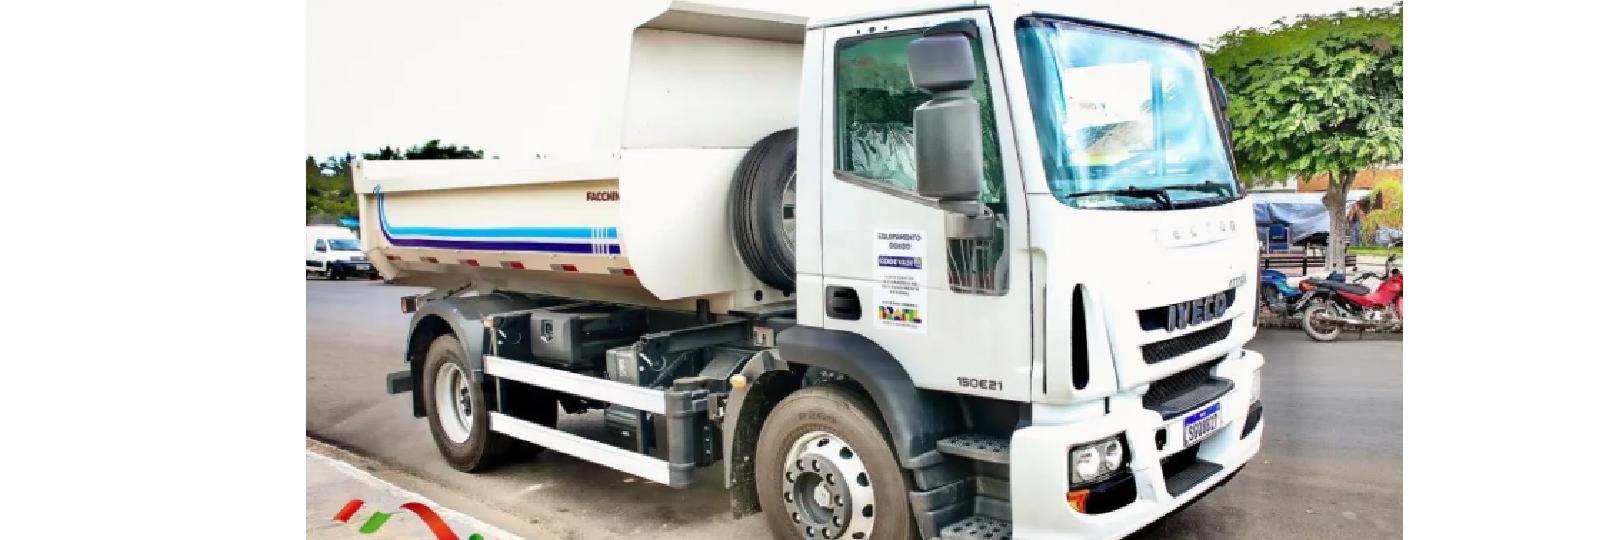 Prefeitura de São José dos Cordeiros adquire caminhão caçamba 0KM